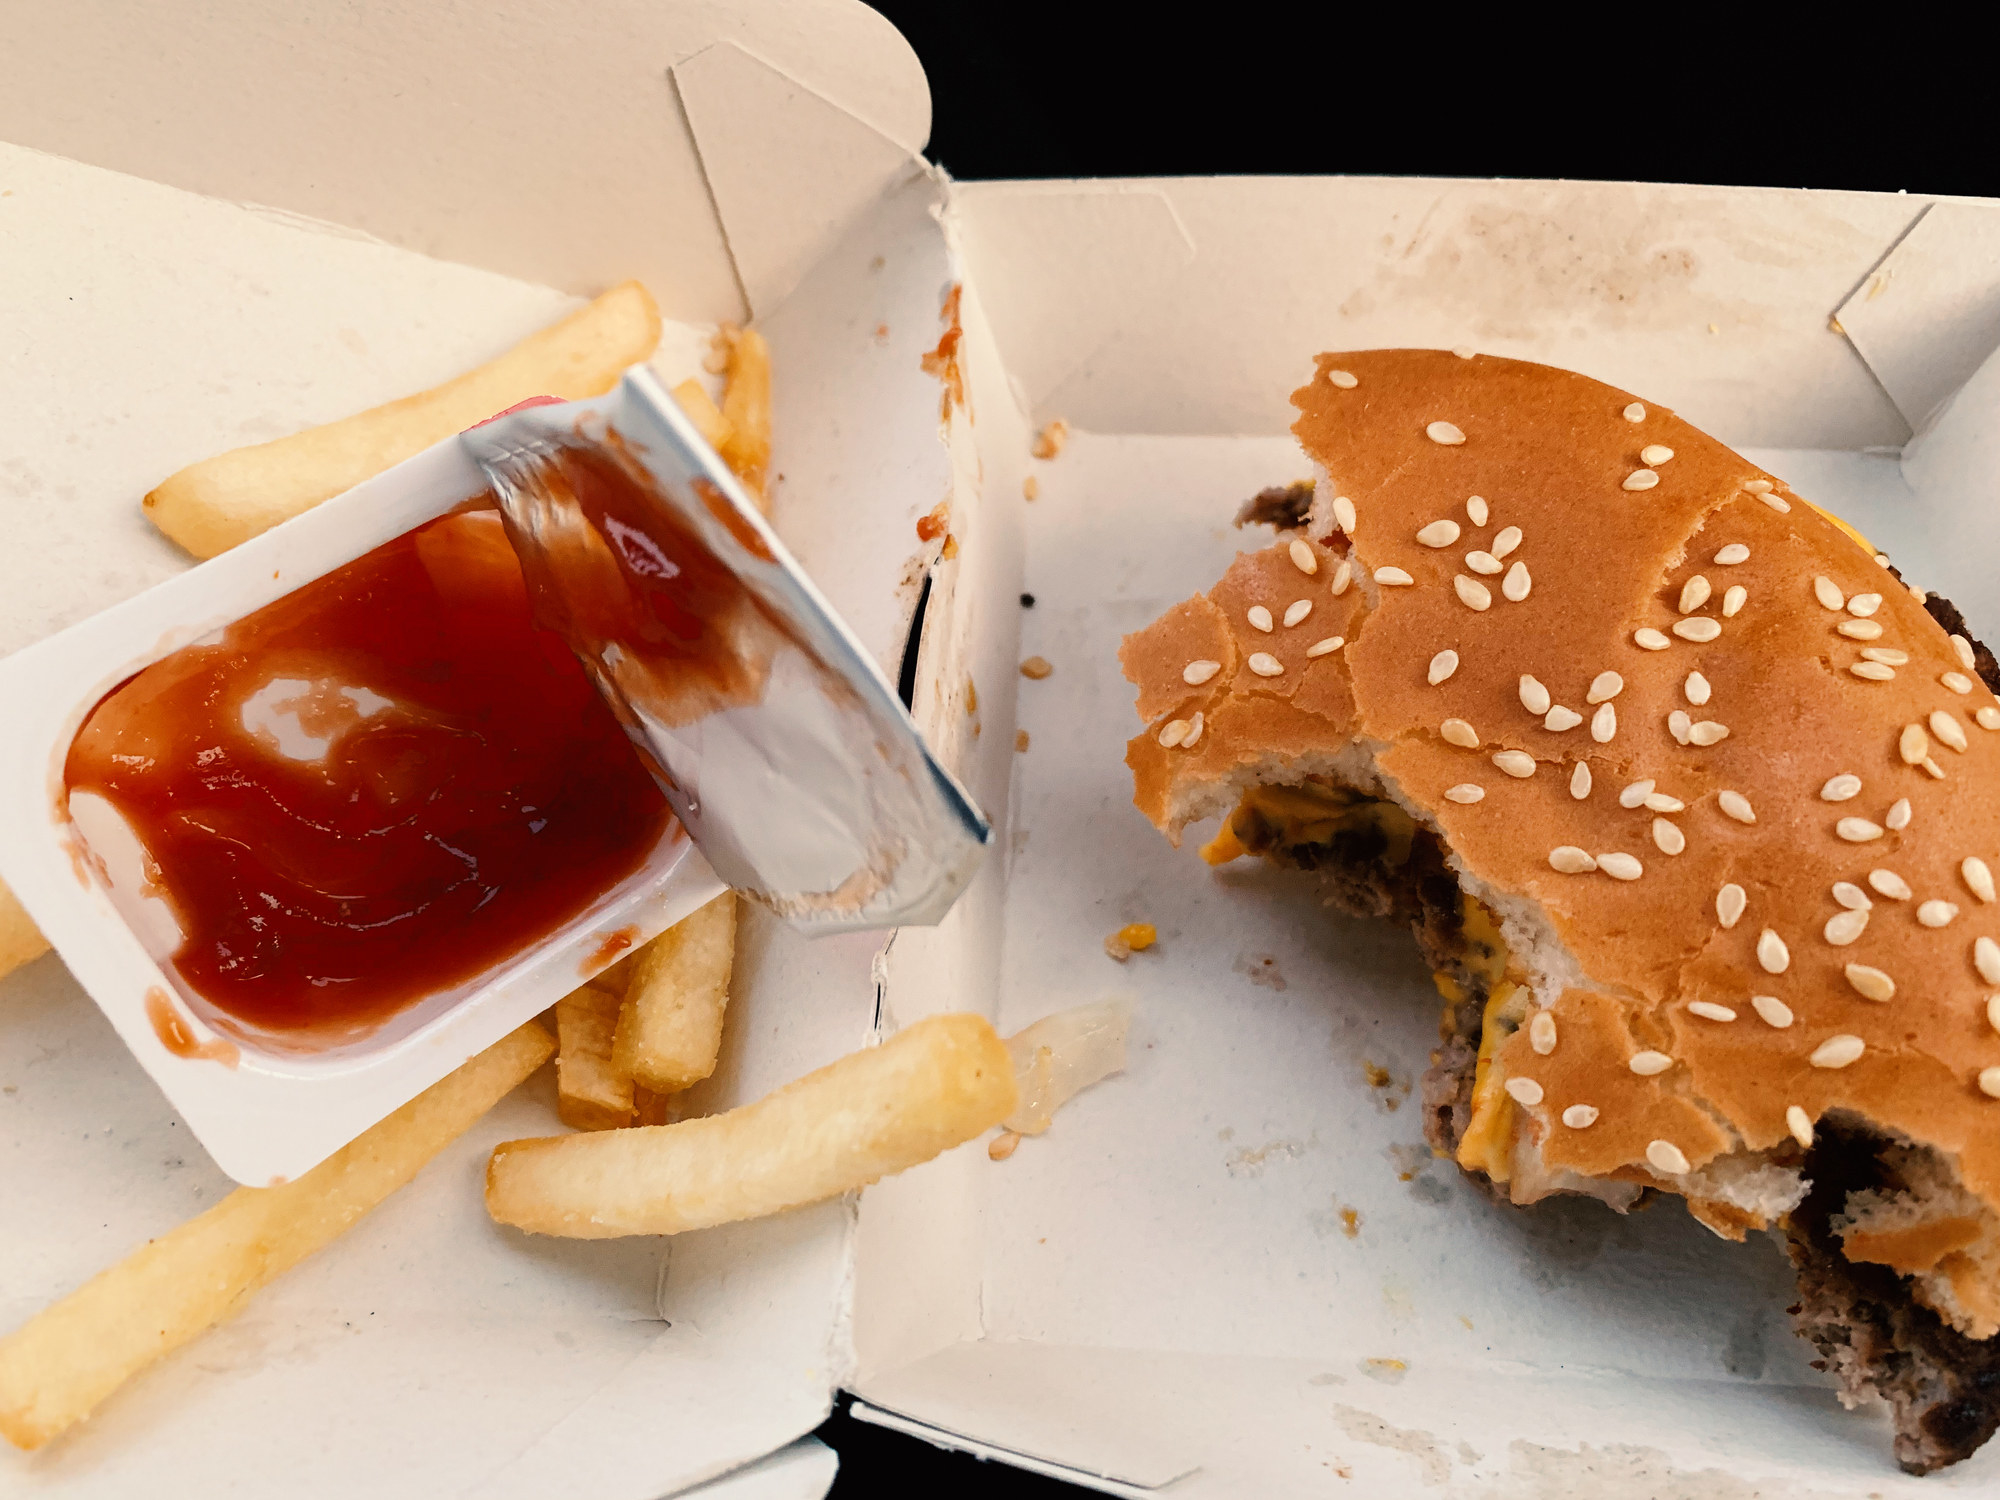 A half-eaten hamburger and fries with ketchup.